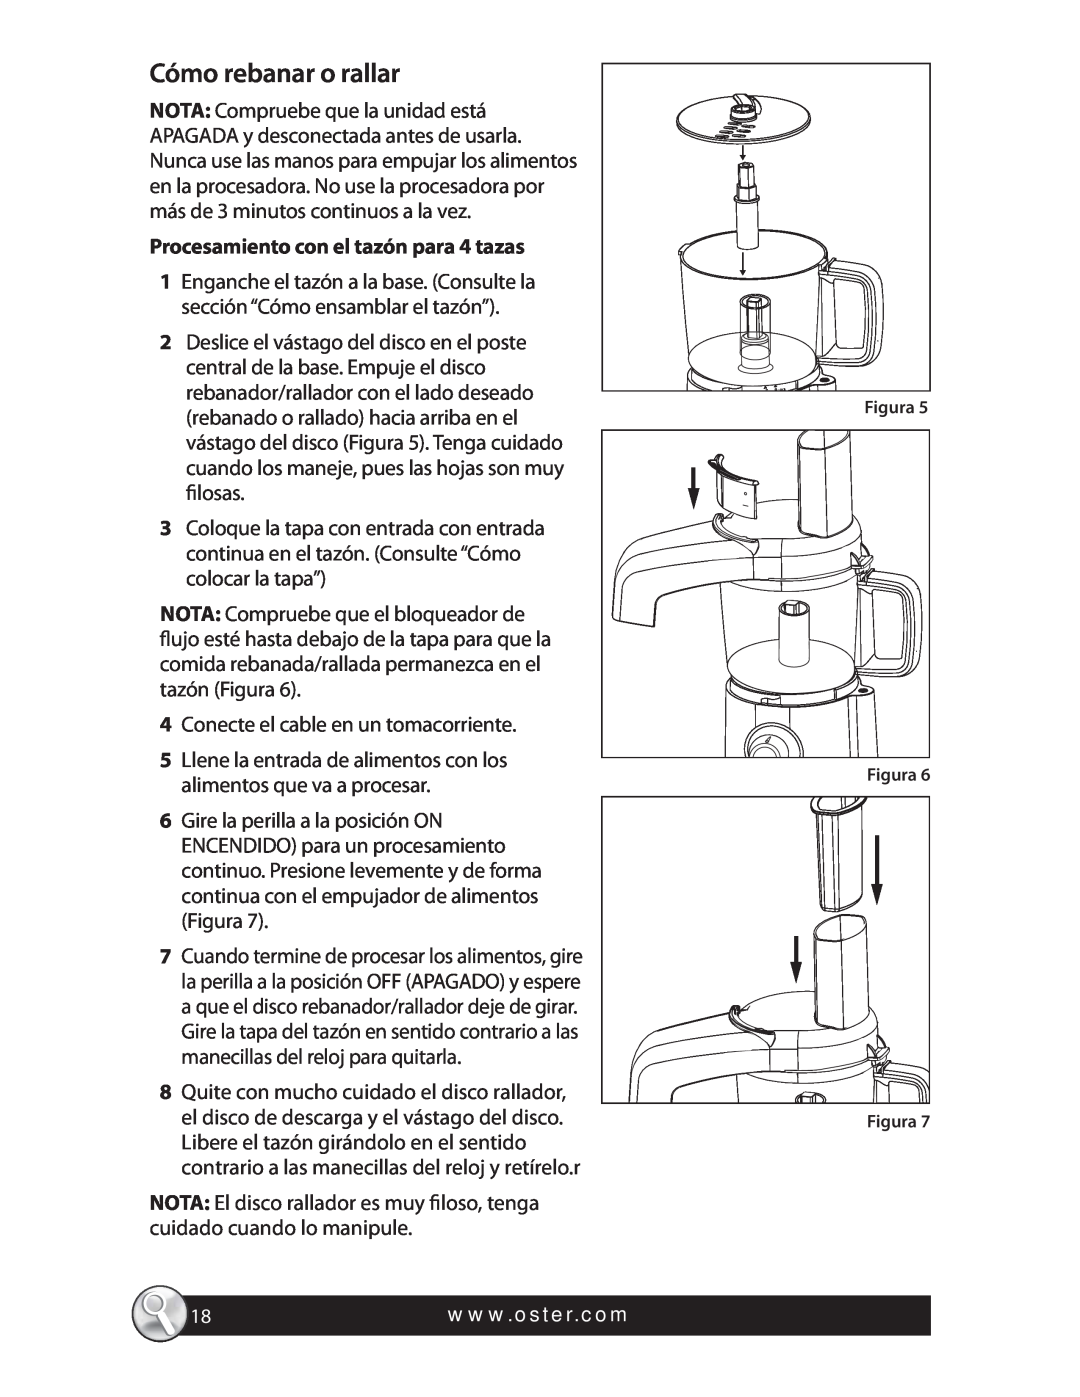 Oster 4 CUP MINI FOOD PROCESSOR, FPSTFP4010 manual Cómo rebanar o rallar, Procesamiento con el tazón para 4 tazas 